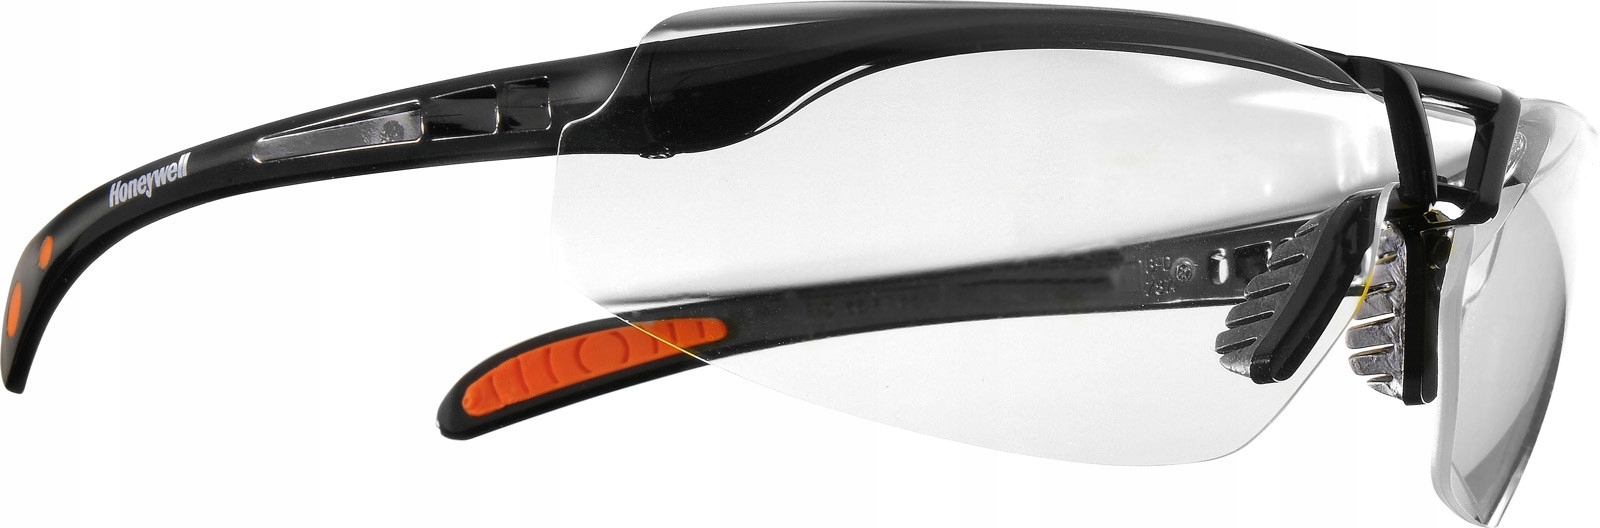 Honeywell Protege Extreme предохранительные очки